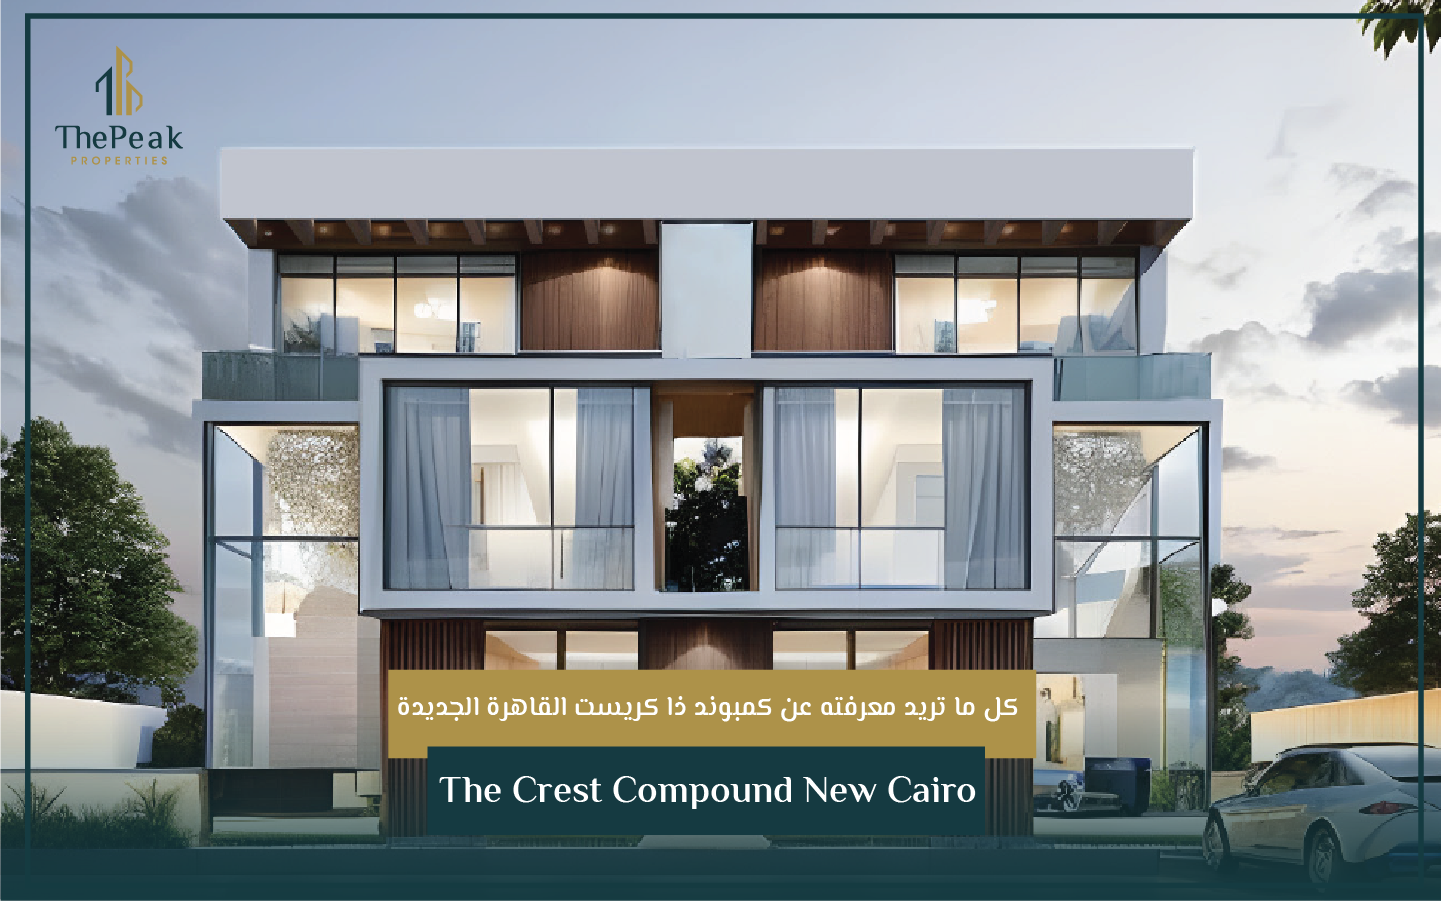 "فيلا للبيع بالتقسيط في التجمع الخامس  مساحة 210 متر  مقدم 5 % و تقسيط يصل إلي 7 سنوات  في مشروع The Crest Compound New Cairo" | THE PEAK PROPERTIES